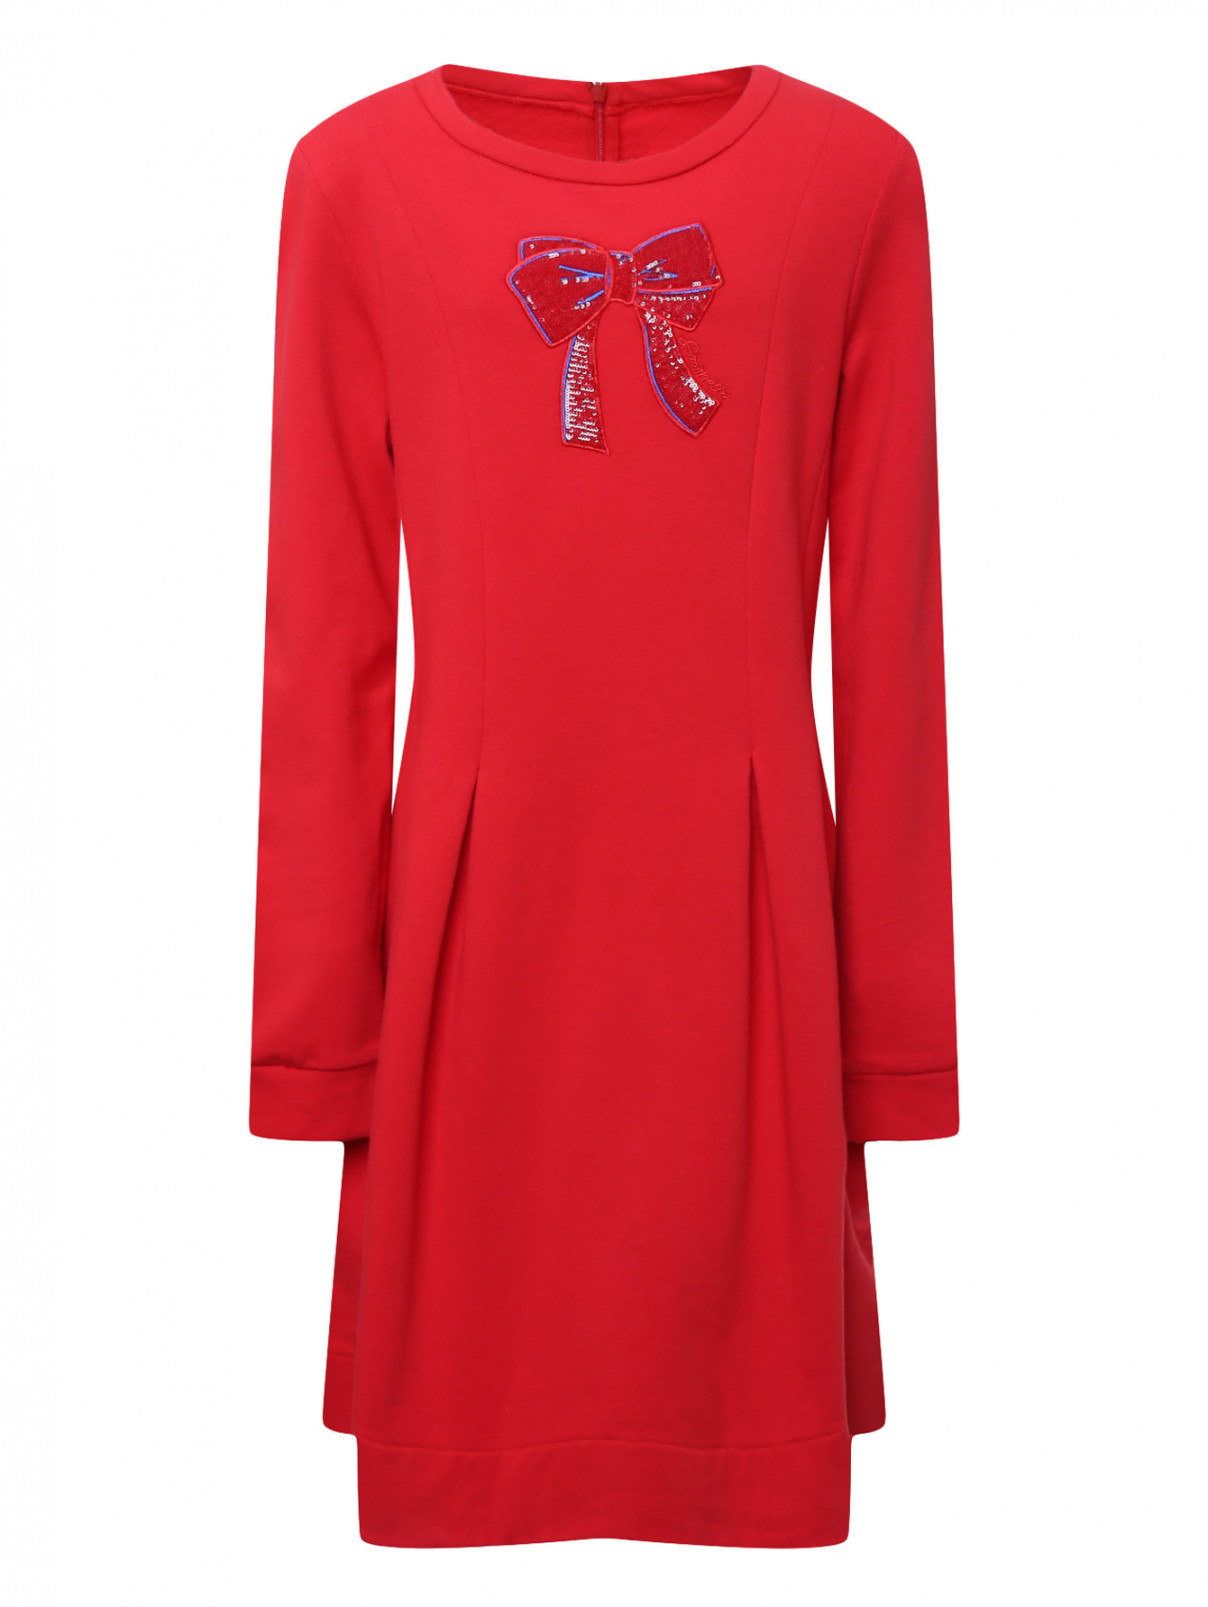 Платье трикотажное с аппликацией Simonetta  –  Общий вид  – Цвет:  Красный